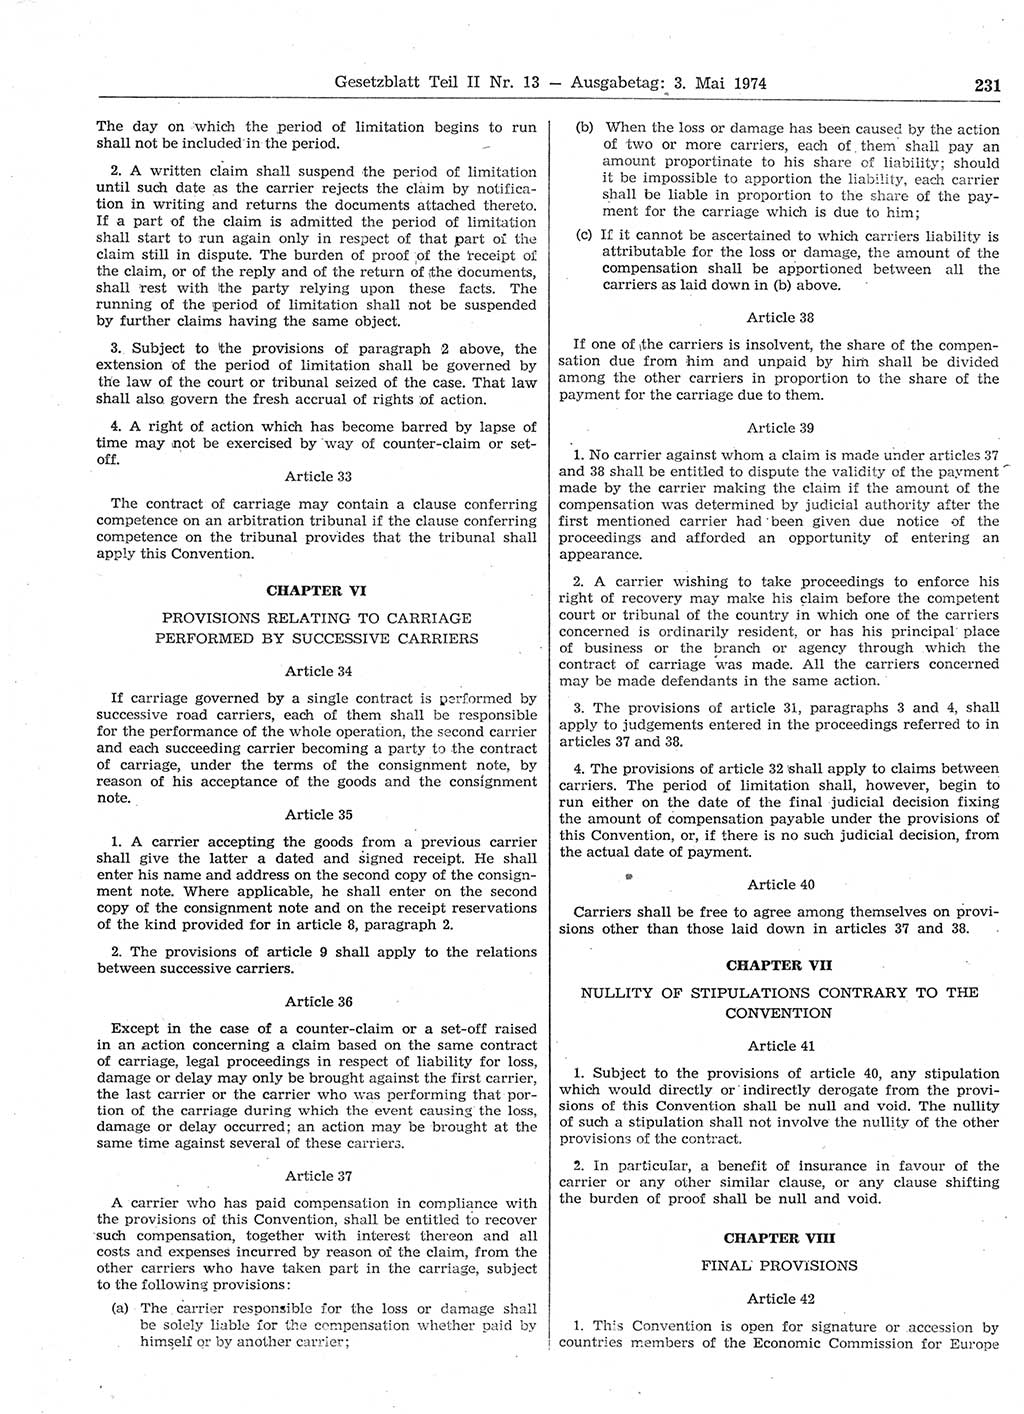 Gesetzblatt (GBl.) der Deutschen Demokratischen Republik (DDR) Teil ⅠⅠ 1974, Seite 231 (GBl. DDR ⅠⅠ 1974, S. 231)